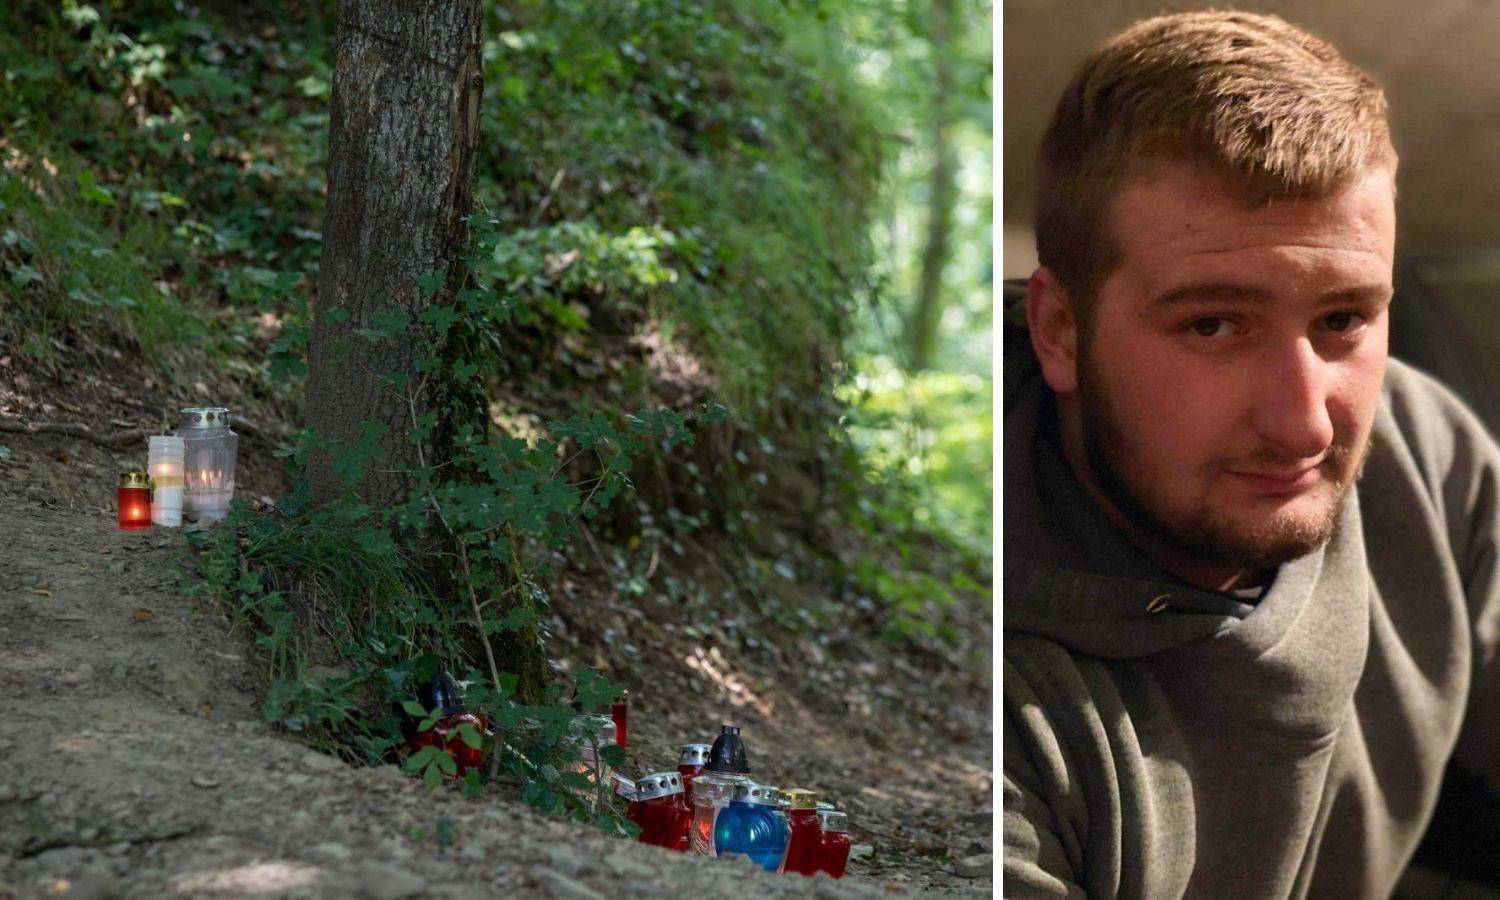 Policija potvrdila da je Dorian u šumi naletio na žicu, istraga ide dalje, ali još nema privedenih